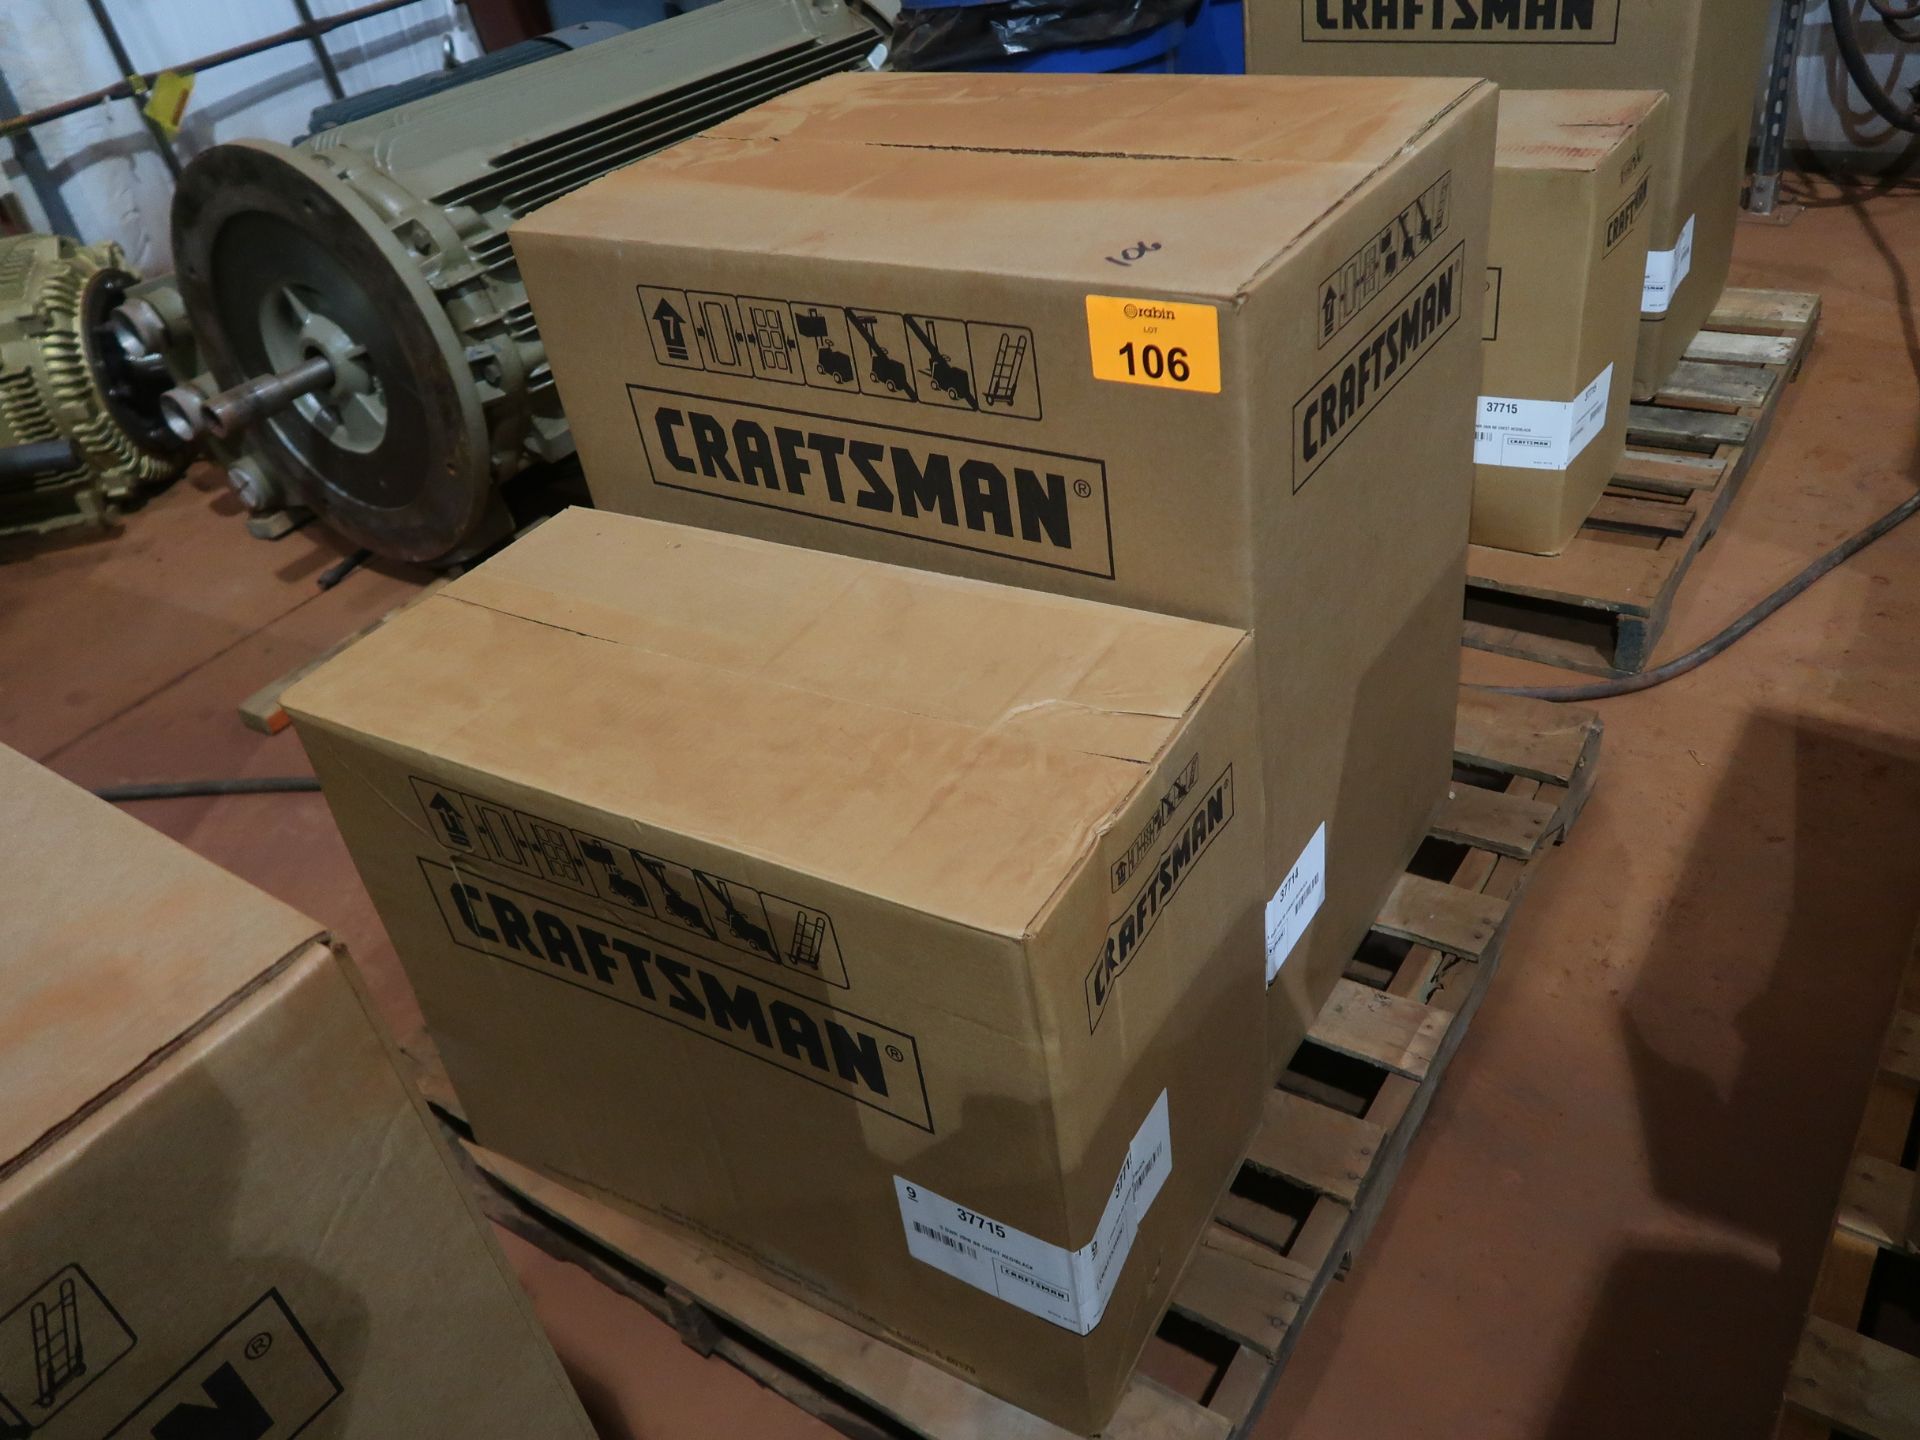 Craftsman tool box set